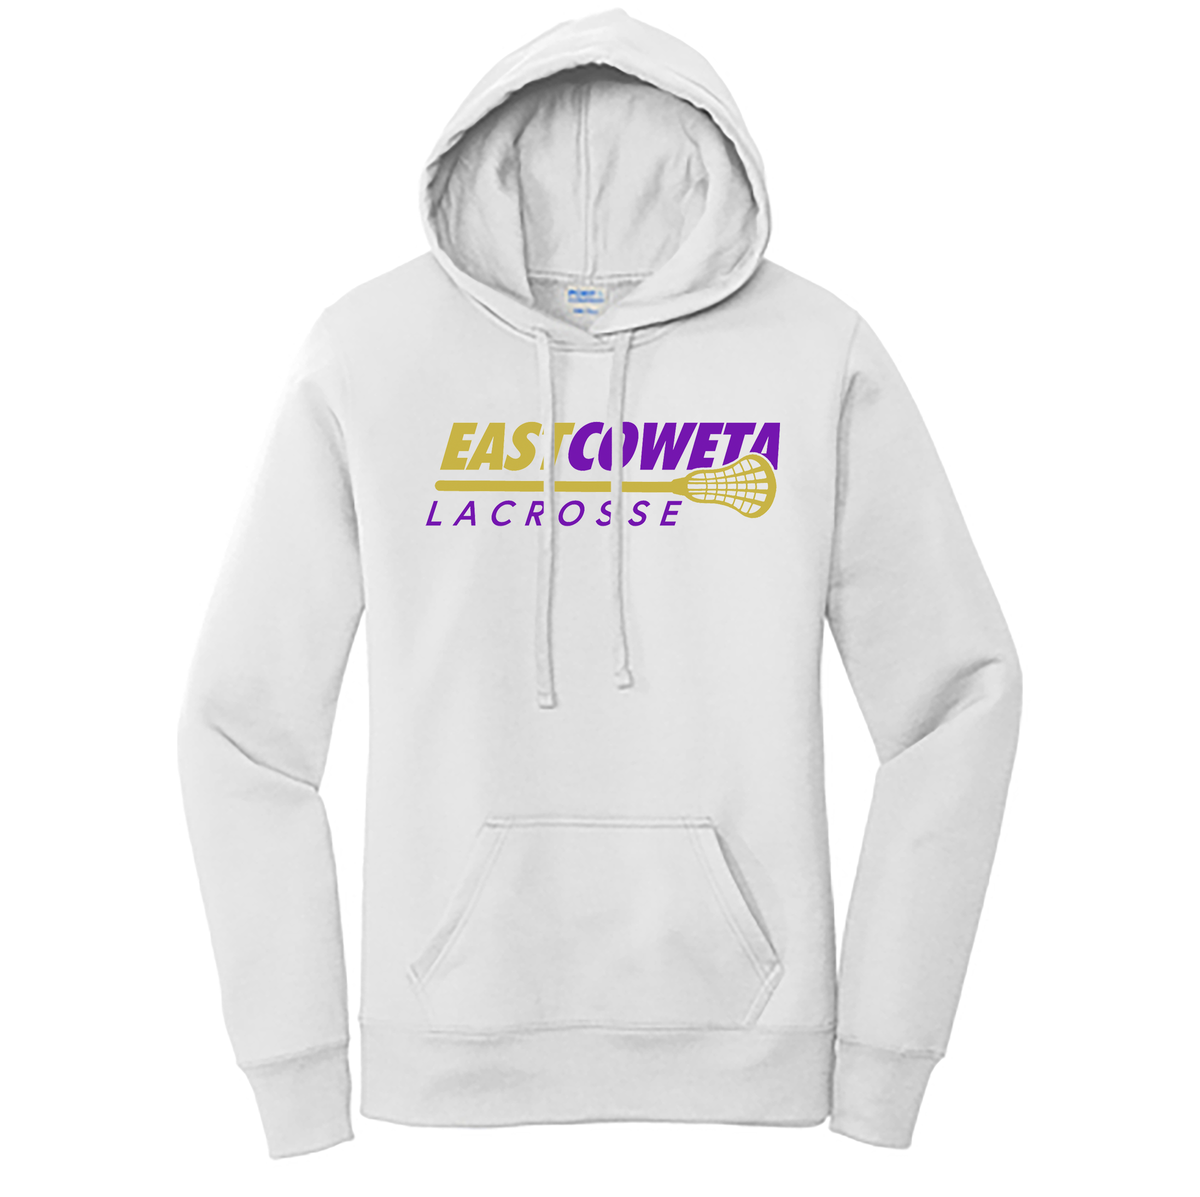 East Coweta Lacrosse Core Fleece Pullover Hooded Sweatshirt